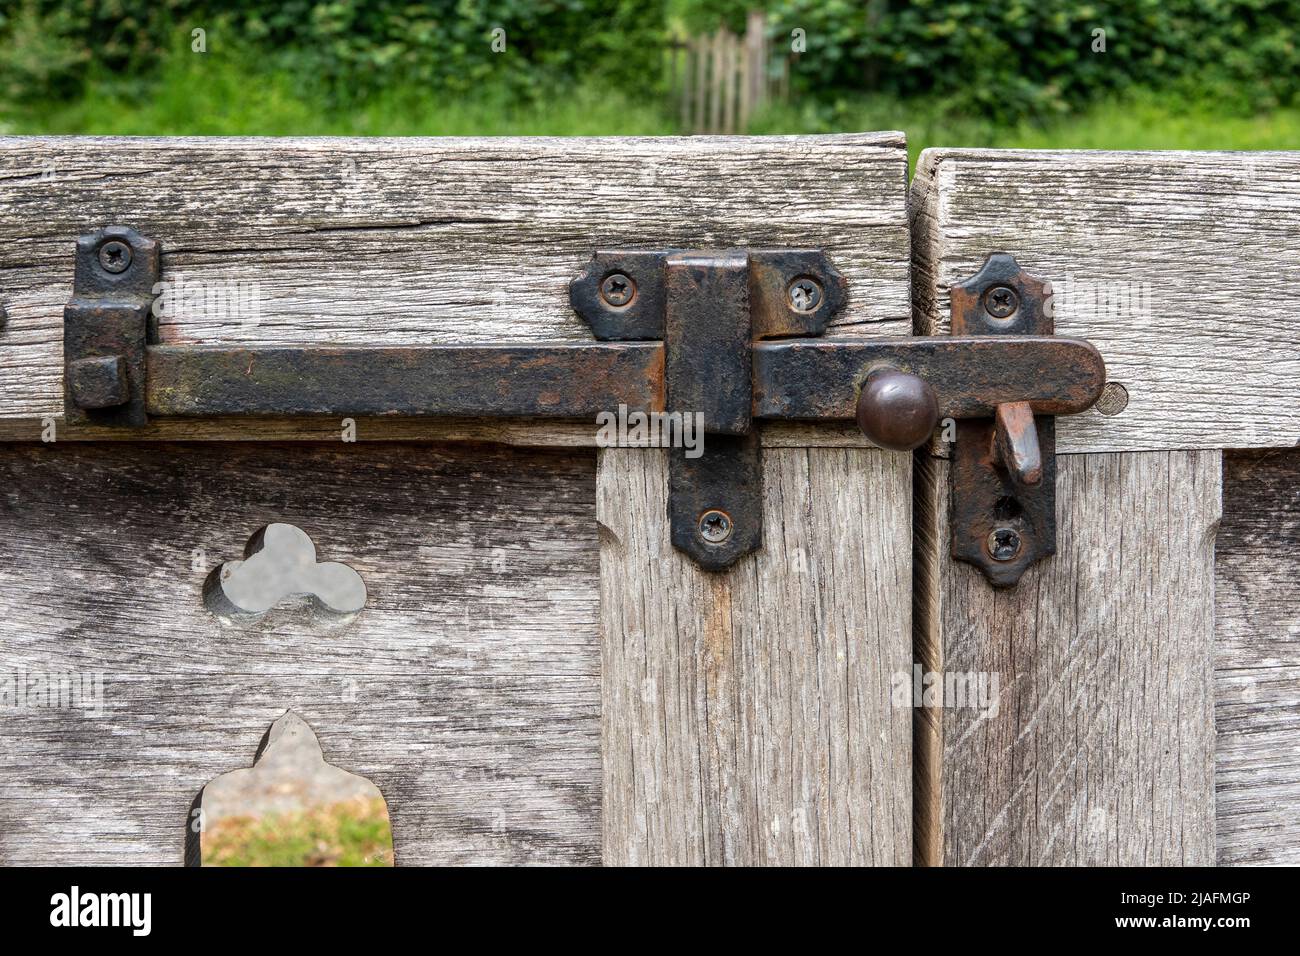 Pestillo de la compuerta de hierro en puertas de madera descoloridas y deterioradas Foto de stock